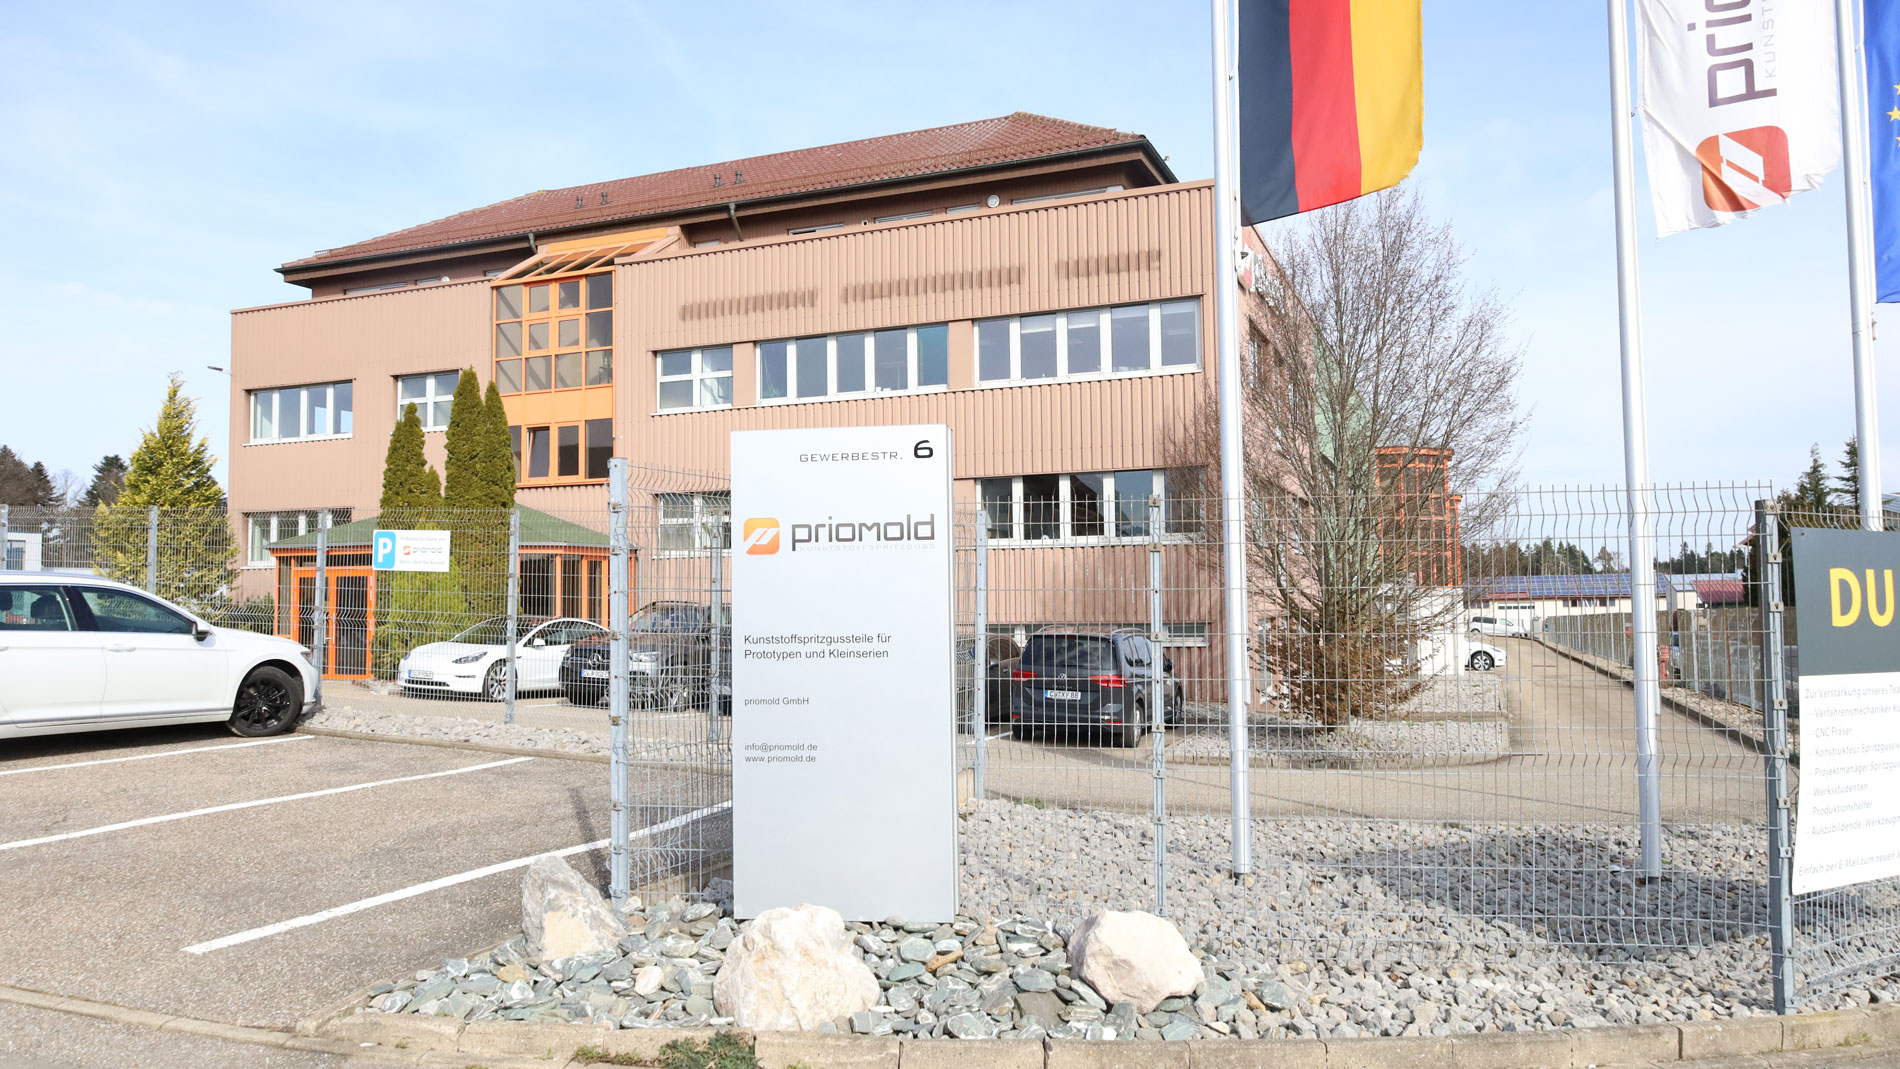 Die Firmenzentrale von Priomold befindet sich im 650 Meter hoch gelegene Schömberg.